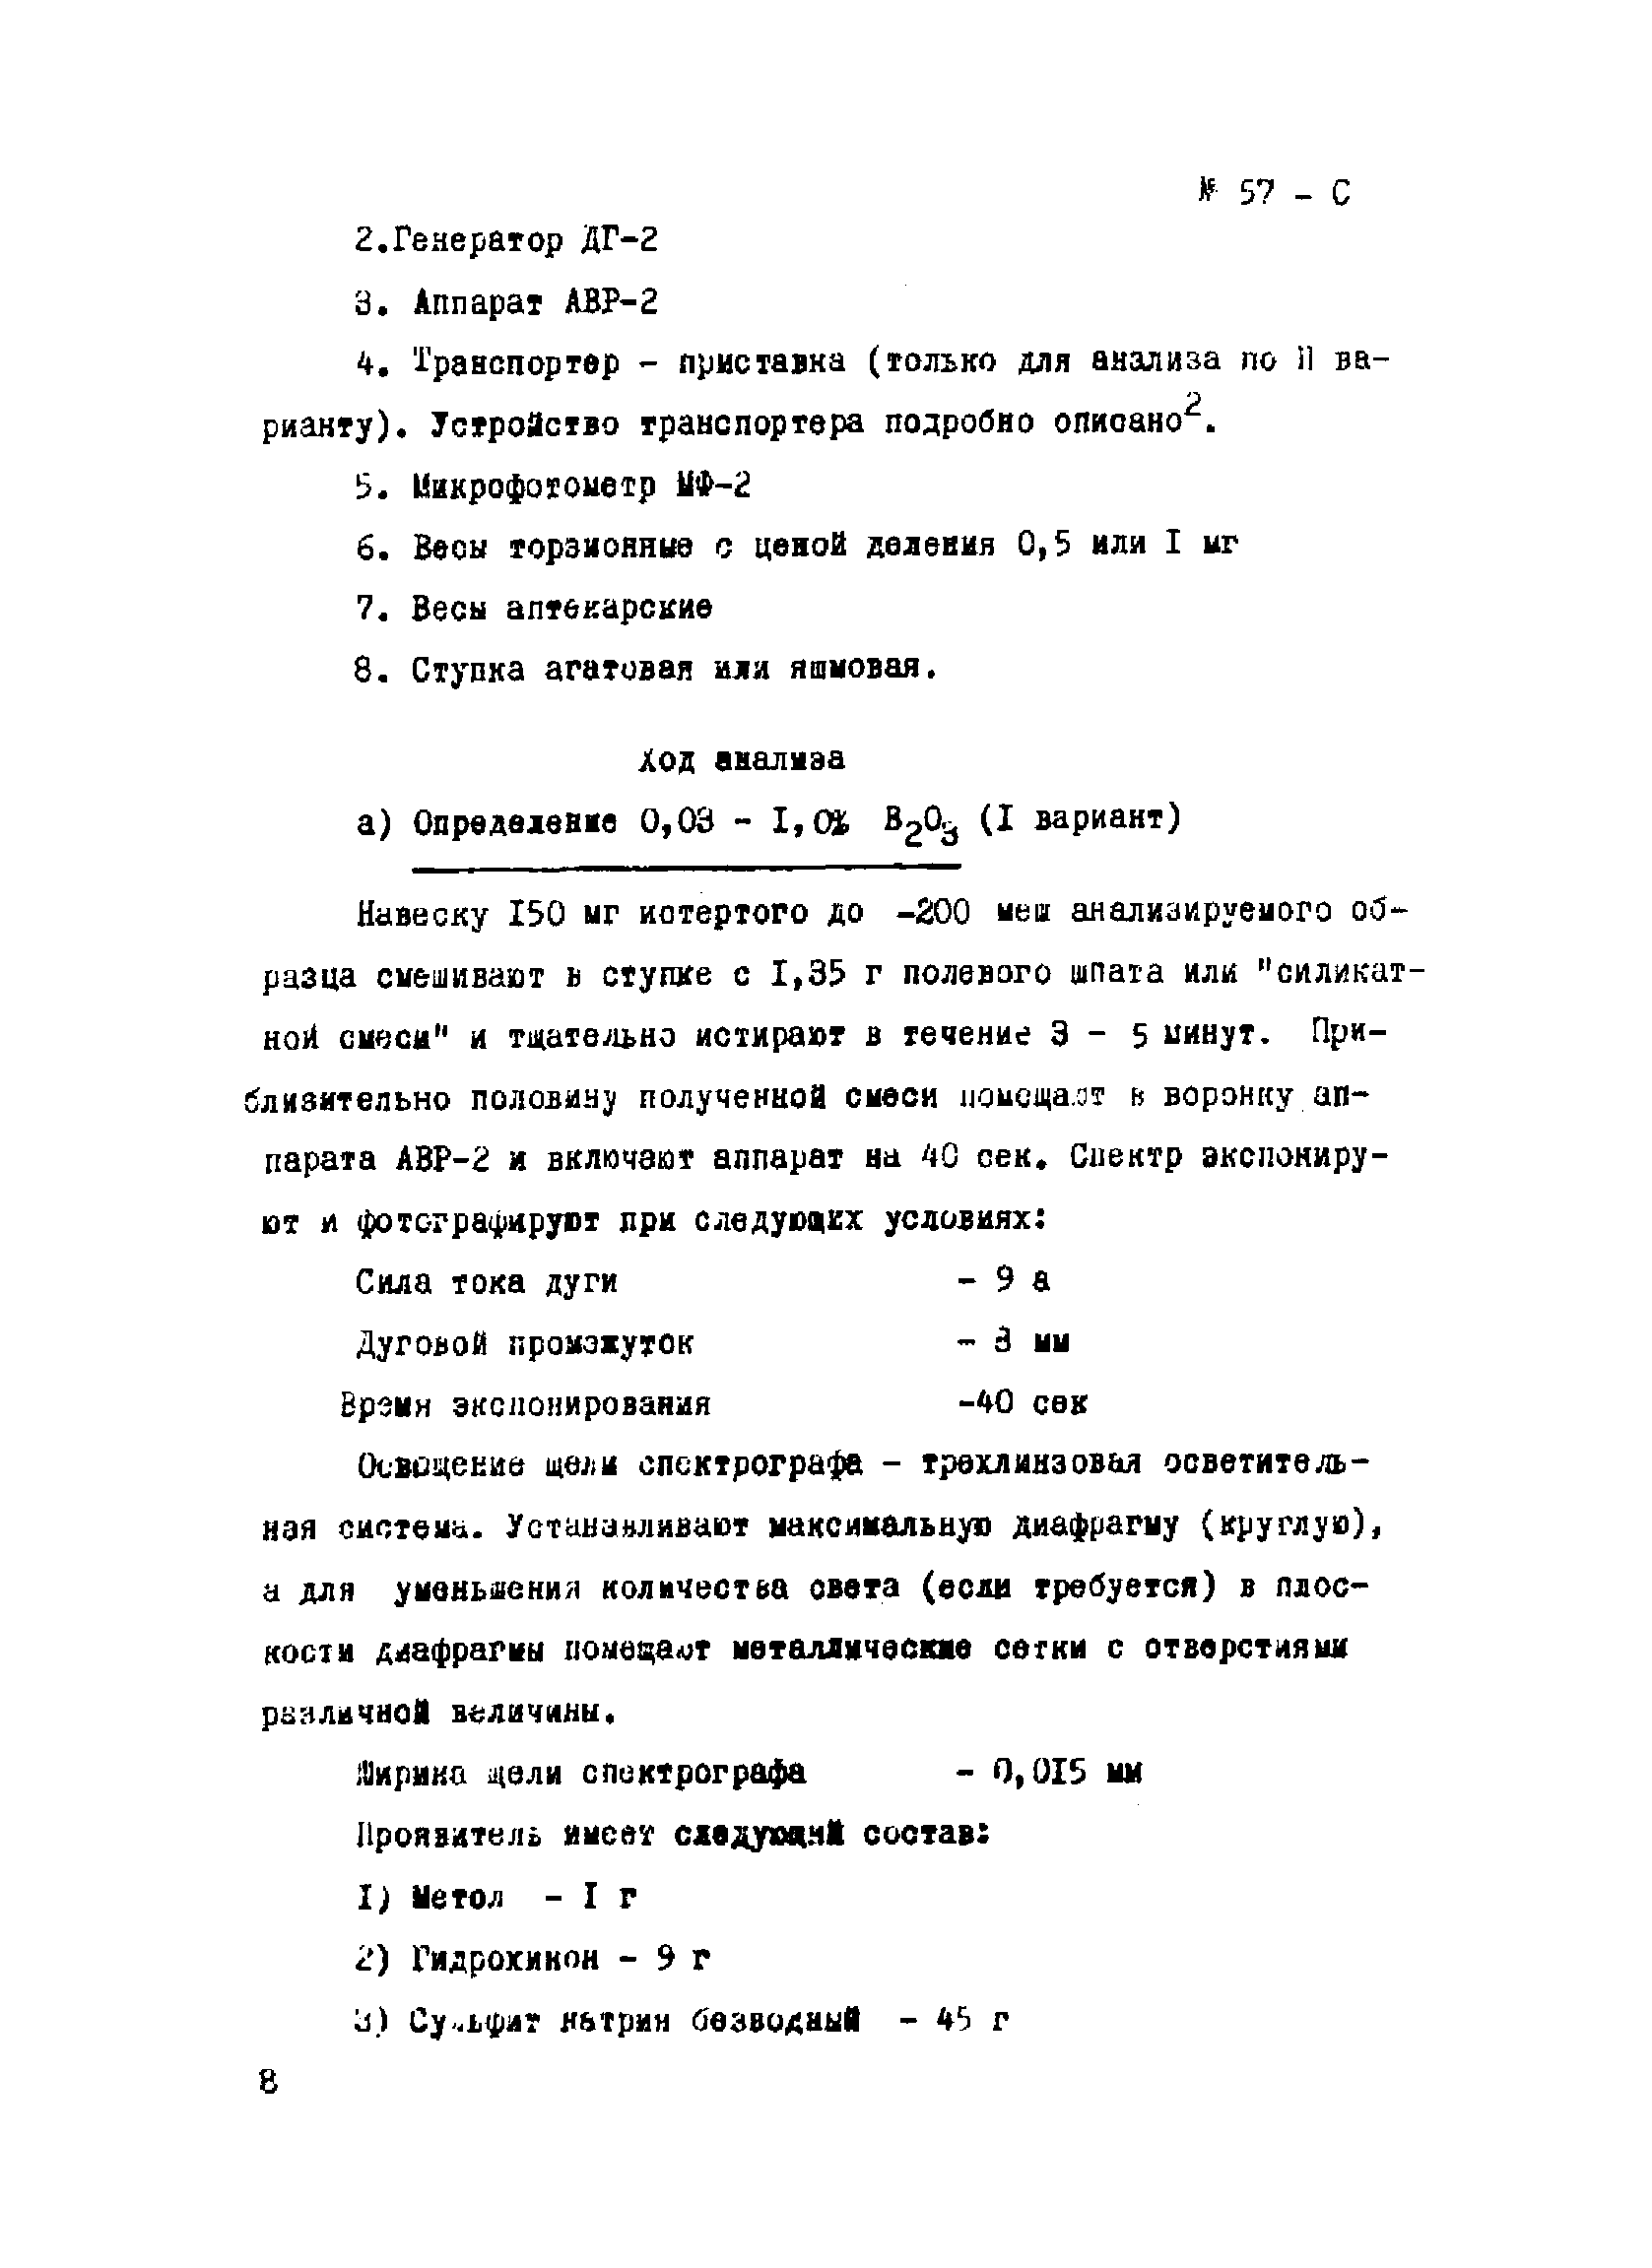 Инструкция НСАМ 57-С